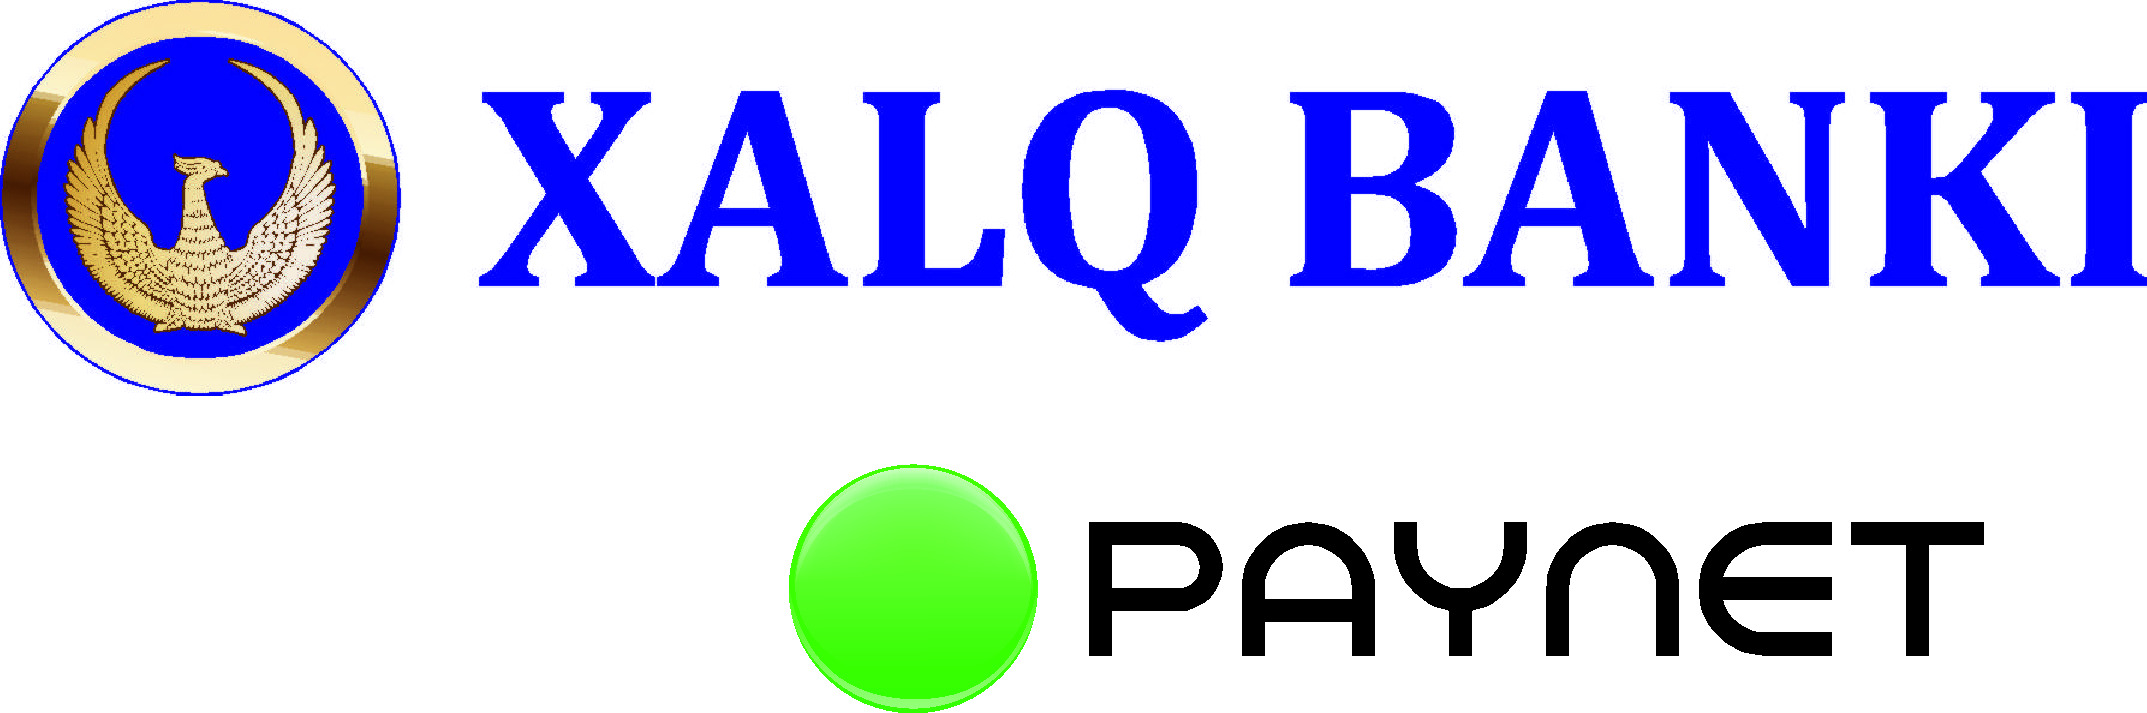 Сайт халк банка узбекистана. Халк банк. Xalq Bank логотип. Халк банк лого. Халк банк Узбекистан лого.